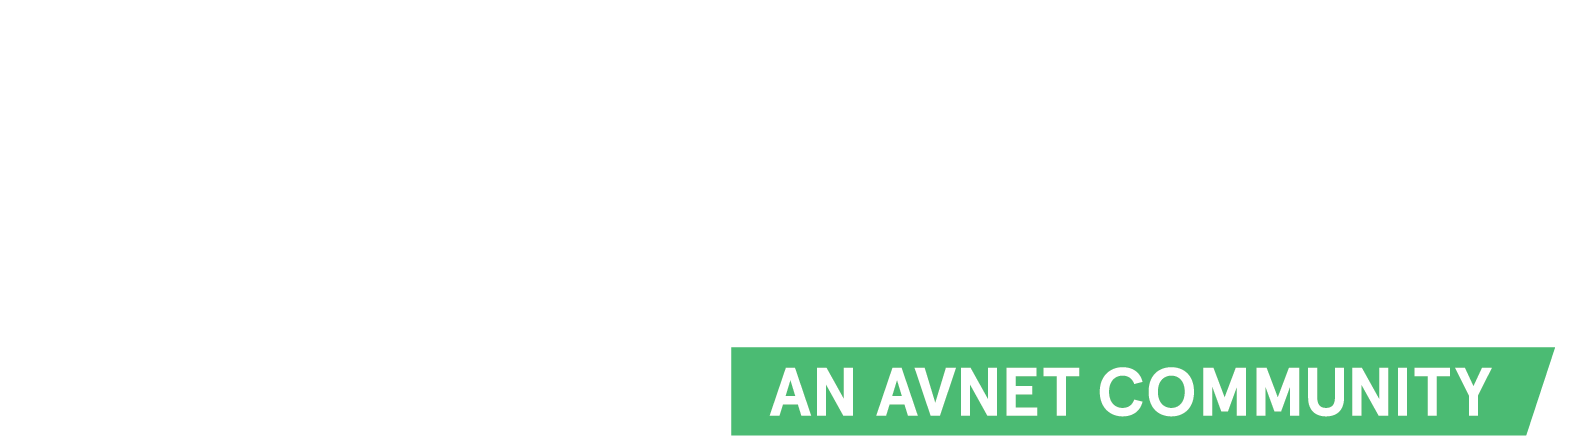 Hackster logo